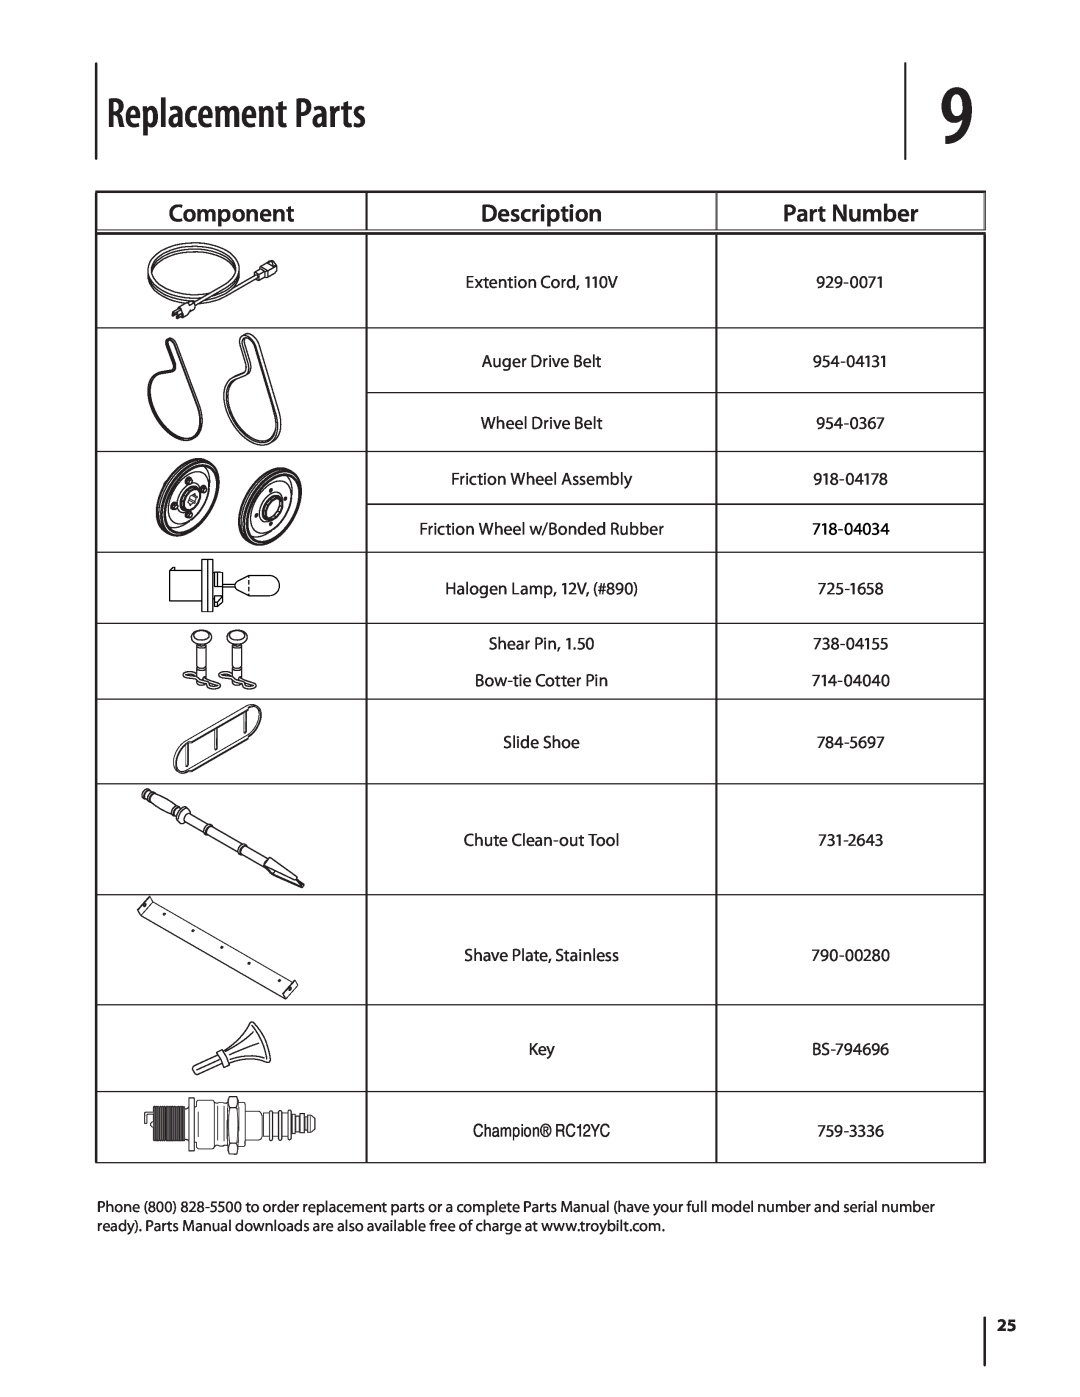 Troy-Bilt 4510 warranty Replacement Parts, Component, Description, Part Number 